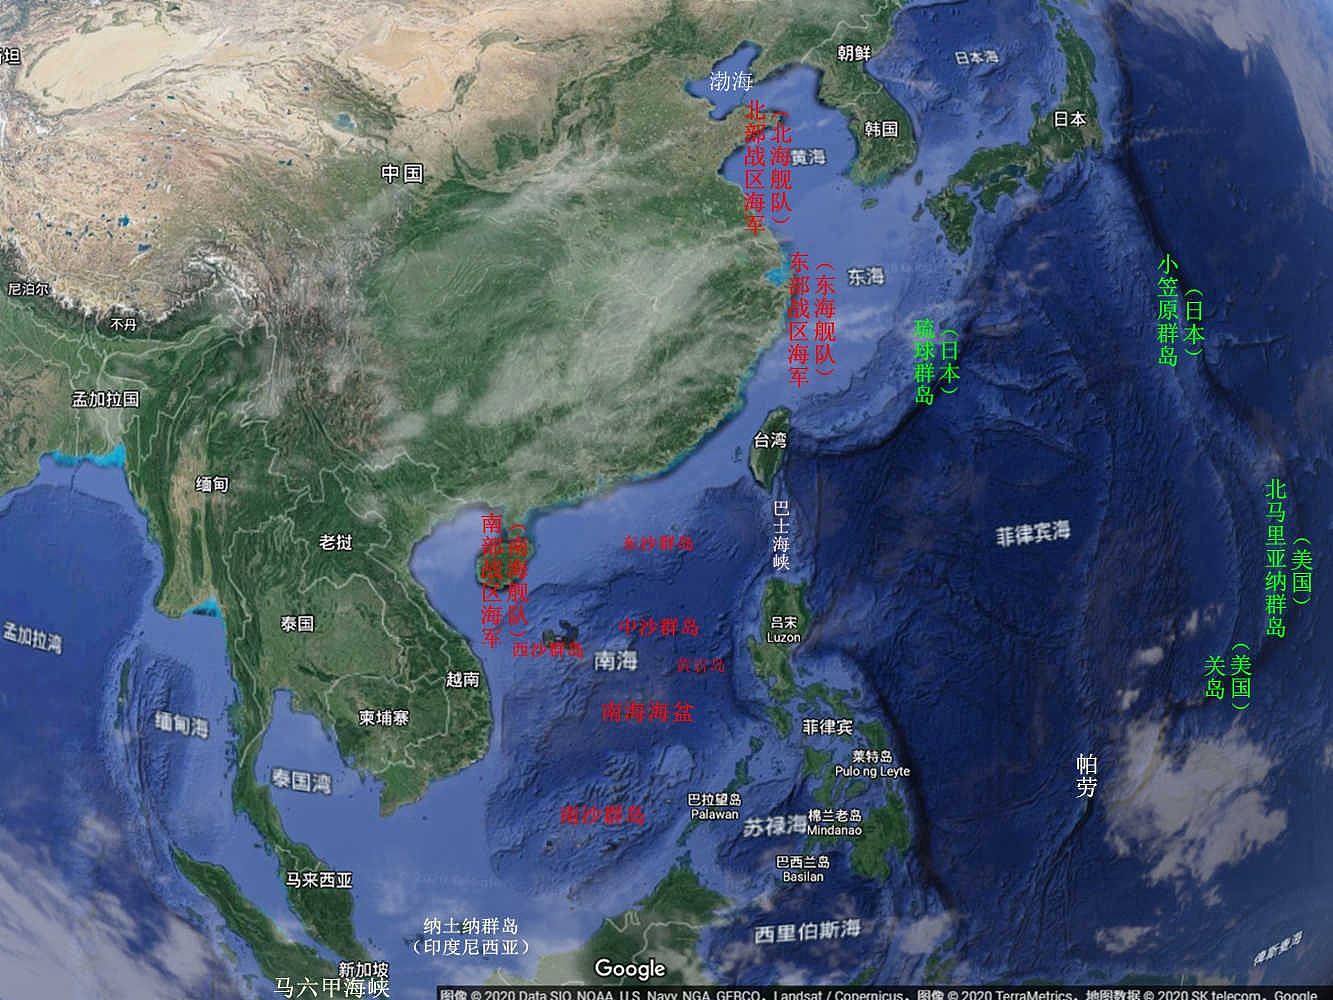 解码中国战略核潜艇南海“堡垒海区” 中美水下较量无声 - 3